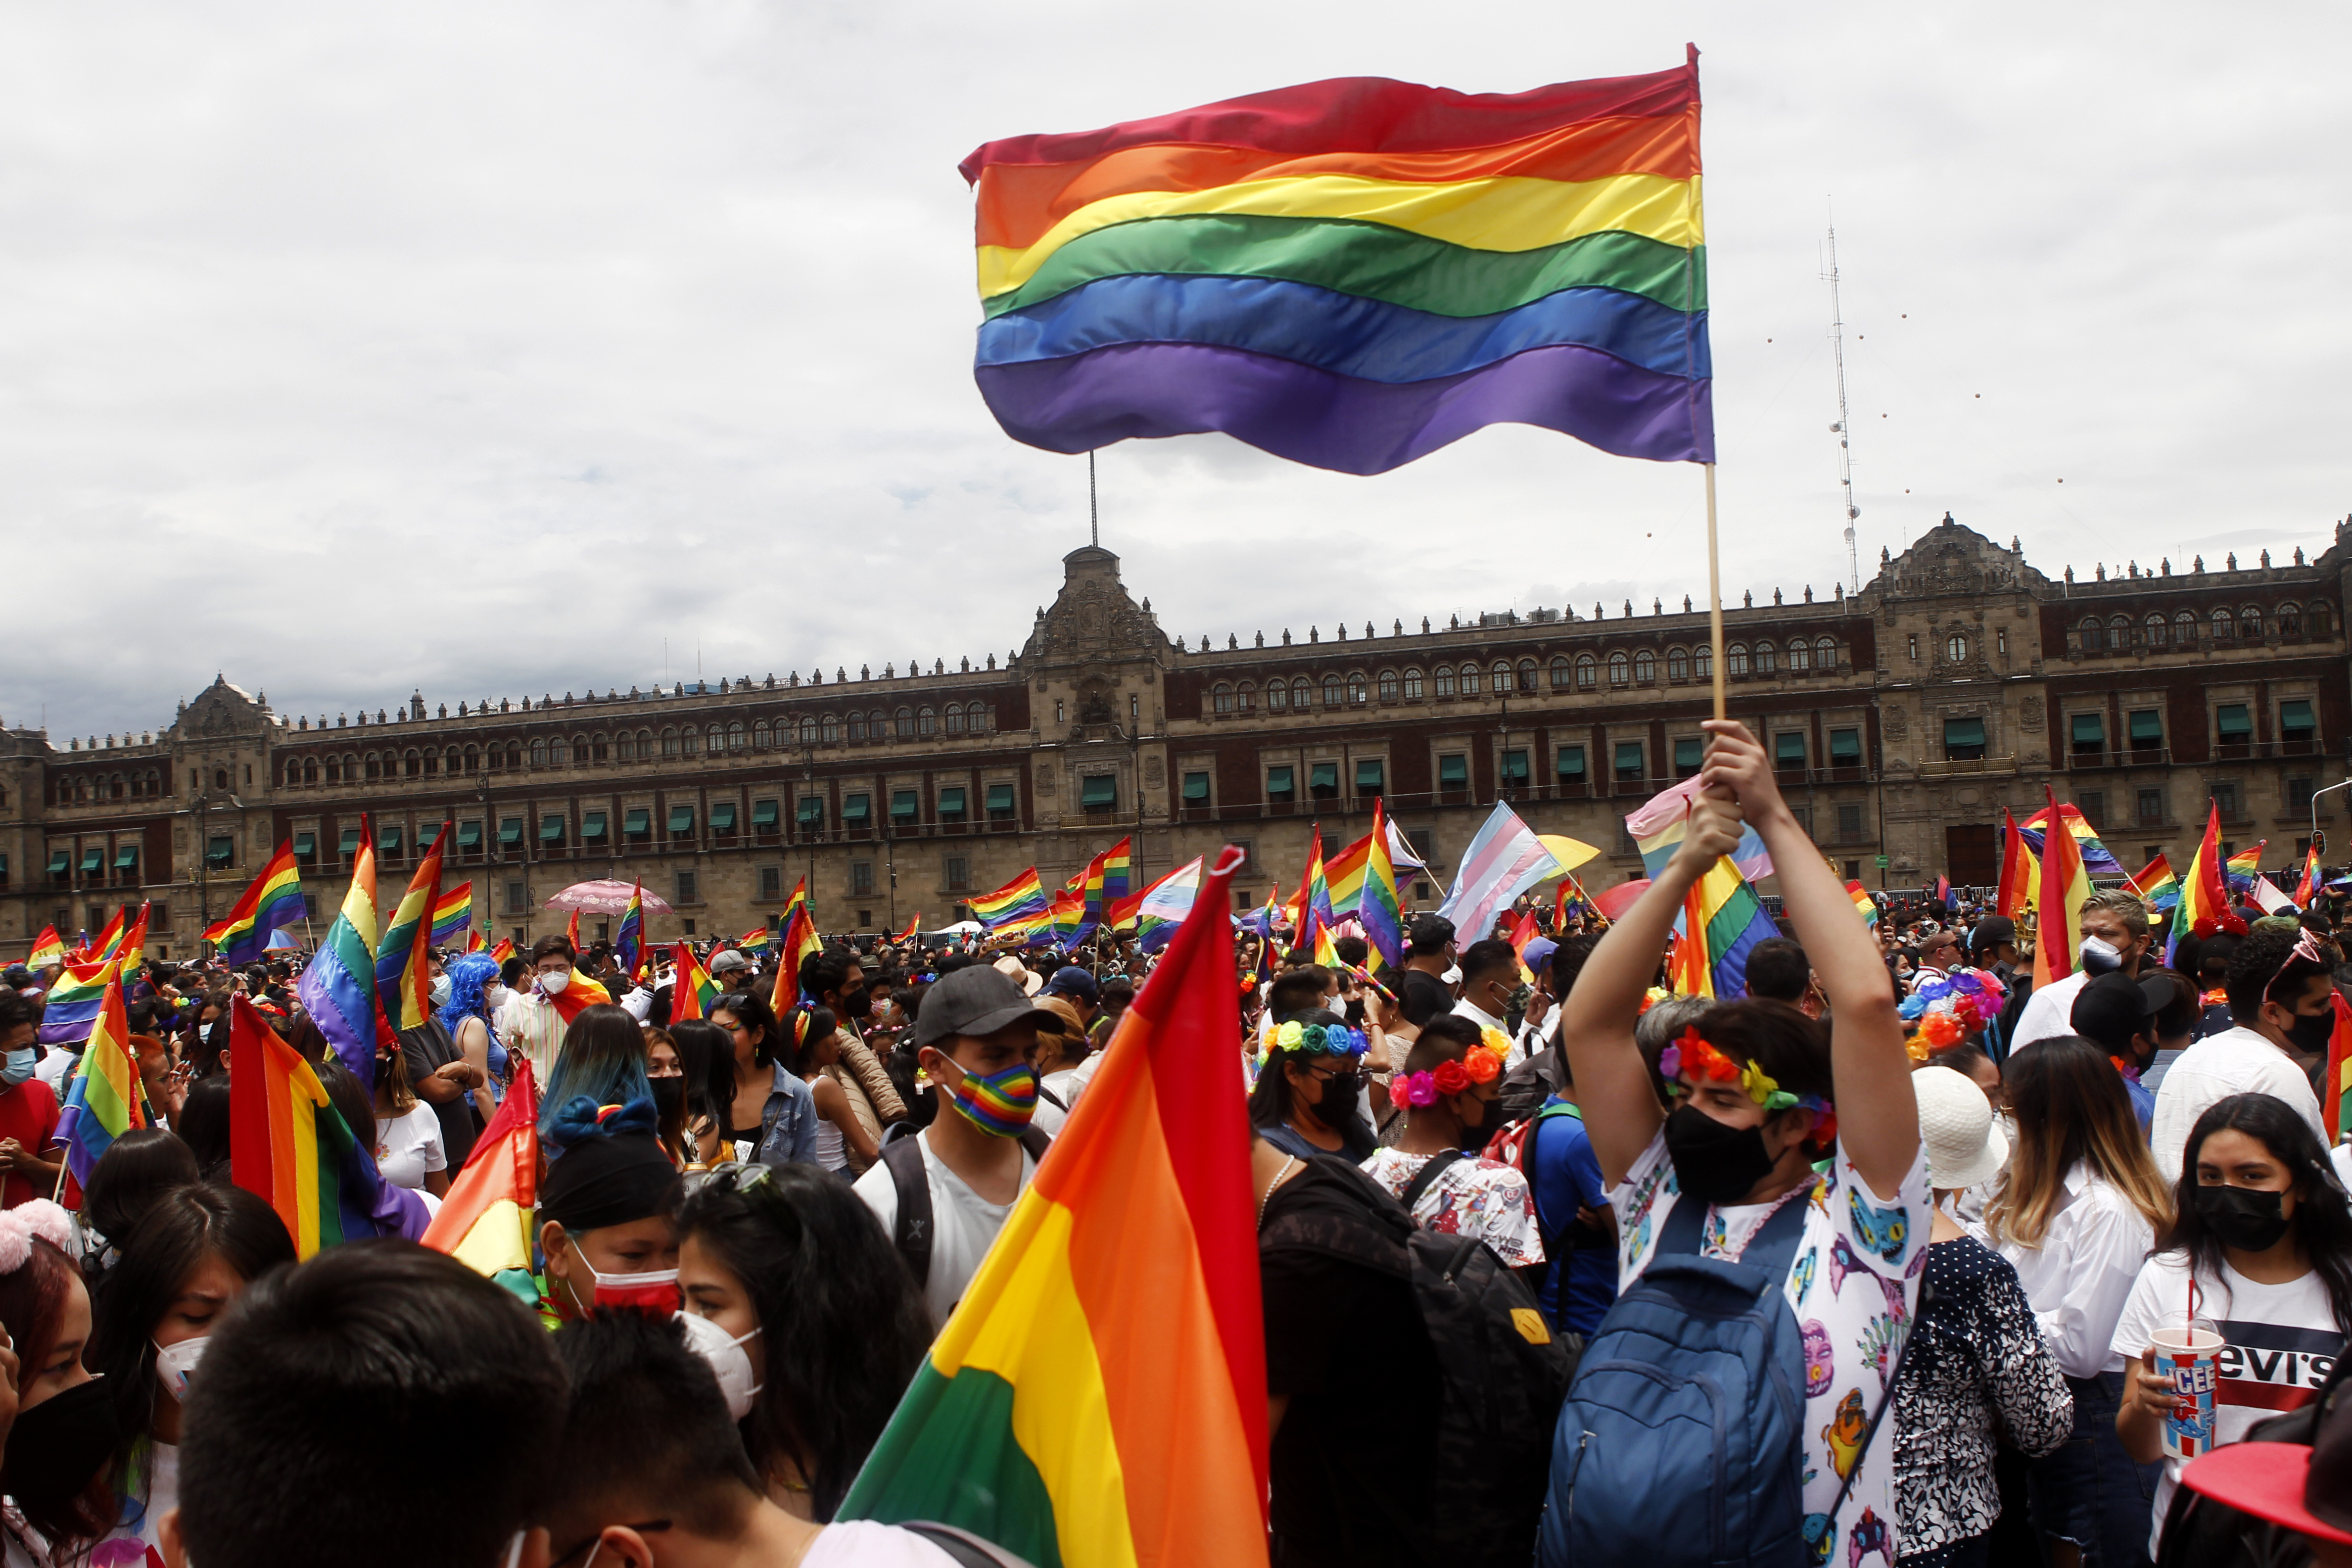 La Marcha del Orgullo LGBTTTIQ en la Ciudad de México tendrá como recorrido desde el Ángel de la Independencia hasta el Zócalo capitalino.  (Foto: Karina Hernández / Infobae)